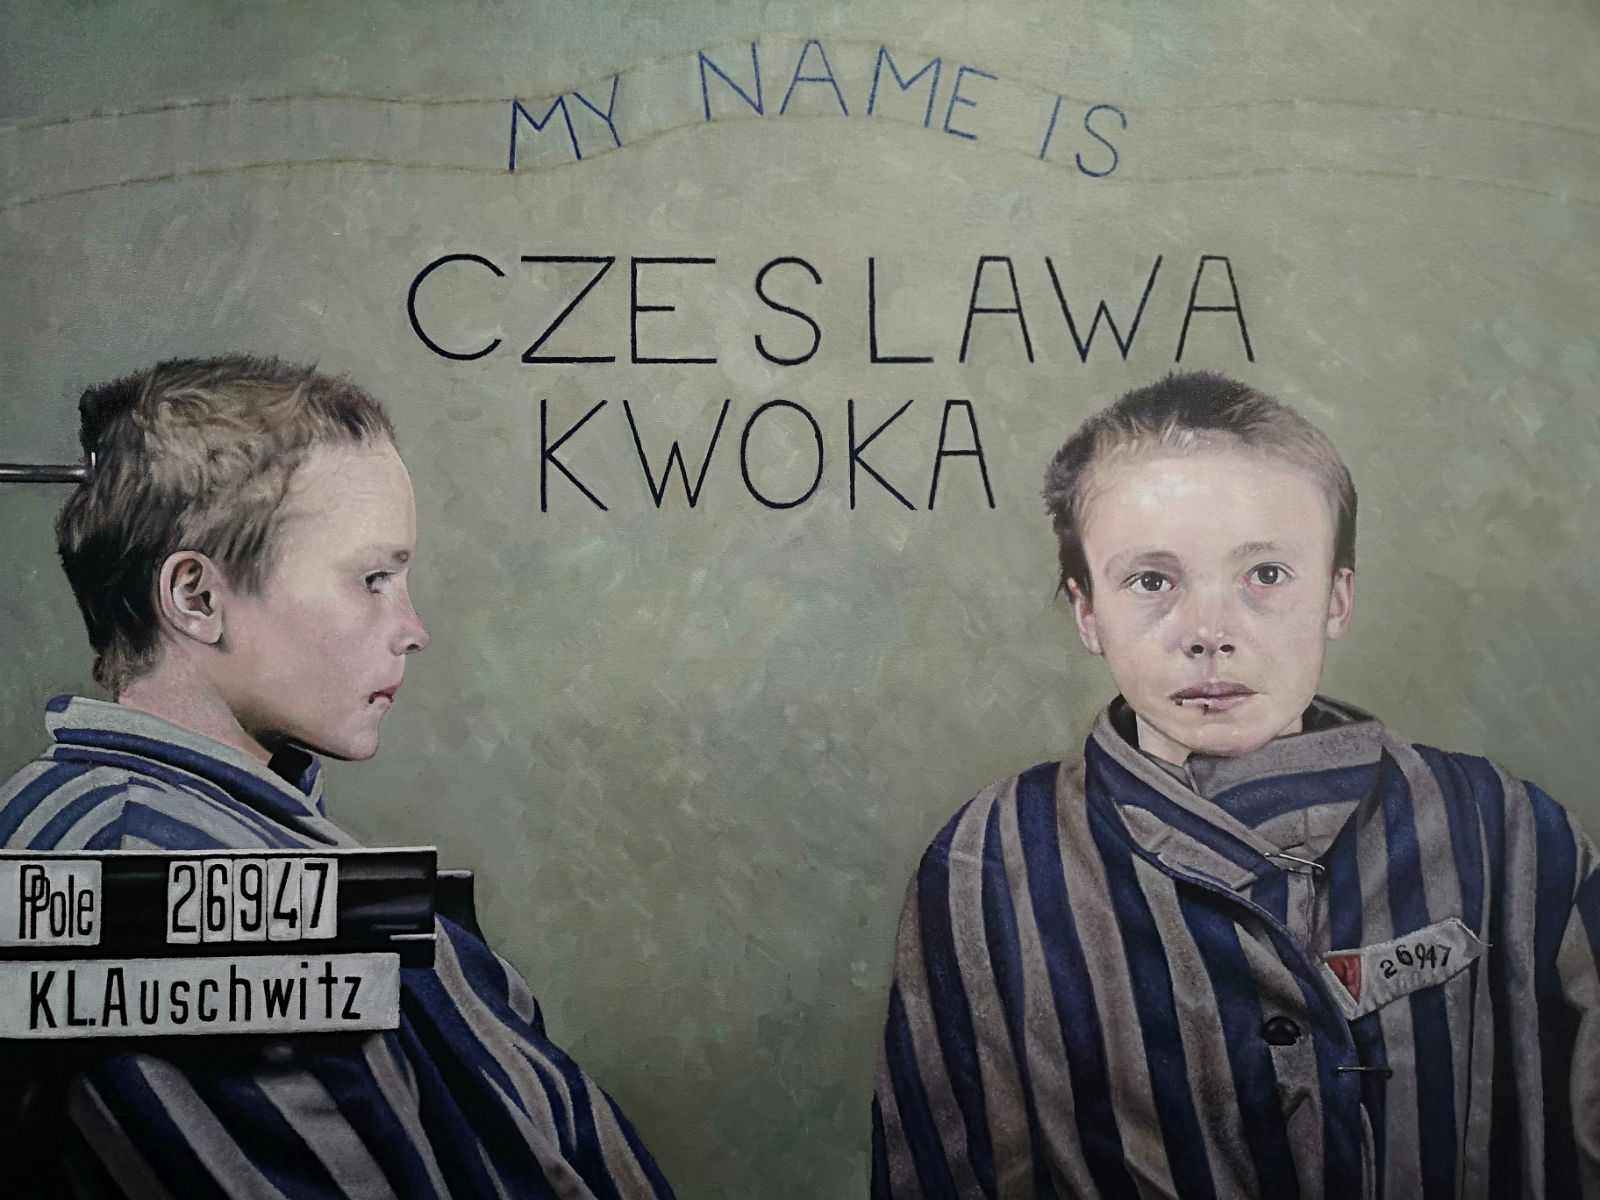 czeslawa kwoka reduced size.jpg